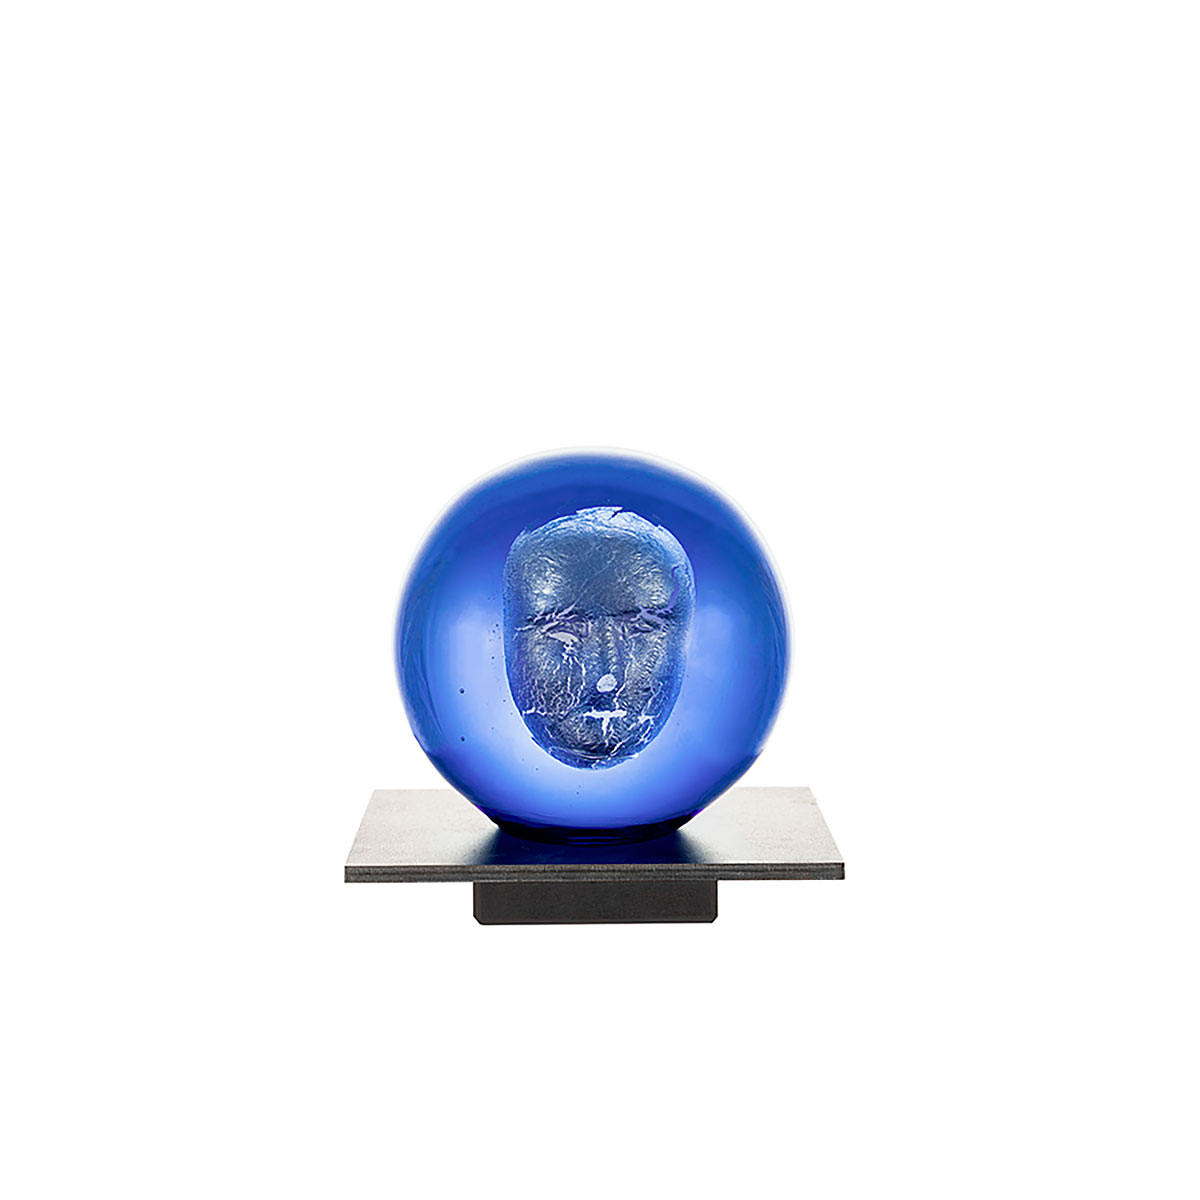 Kosta Boda Headman Blue Brains Sculpture by Bertil Vallien